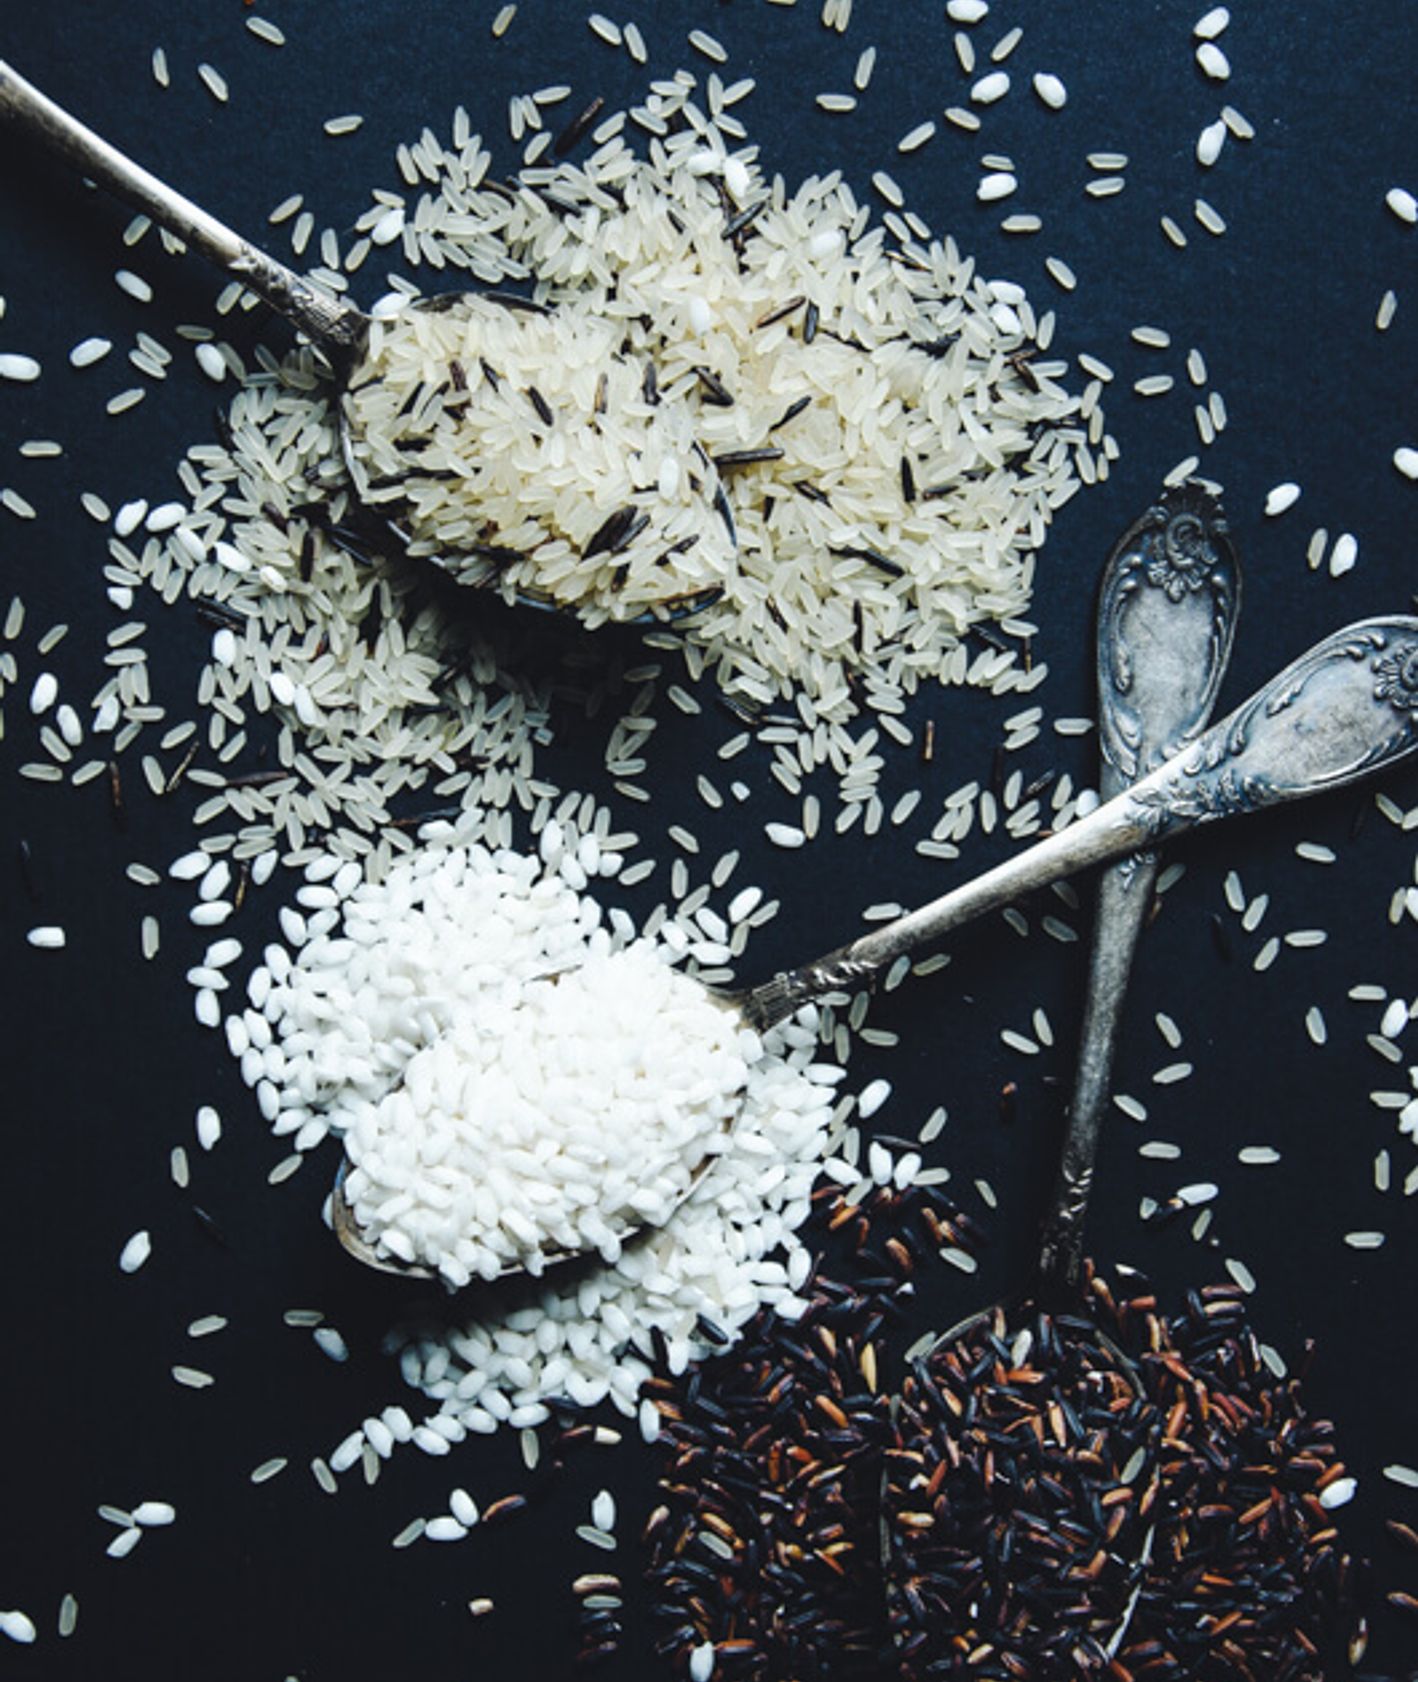 rodzaje ryżu, ryż, jaki wybrać ryż, jaki ryż, ryż do risotto, ryż jaśminowy